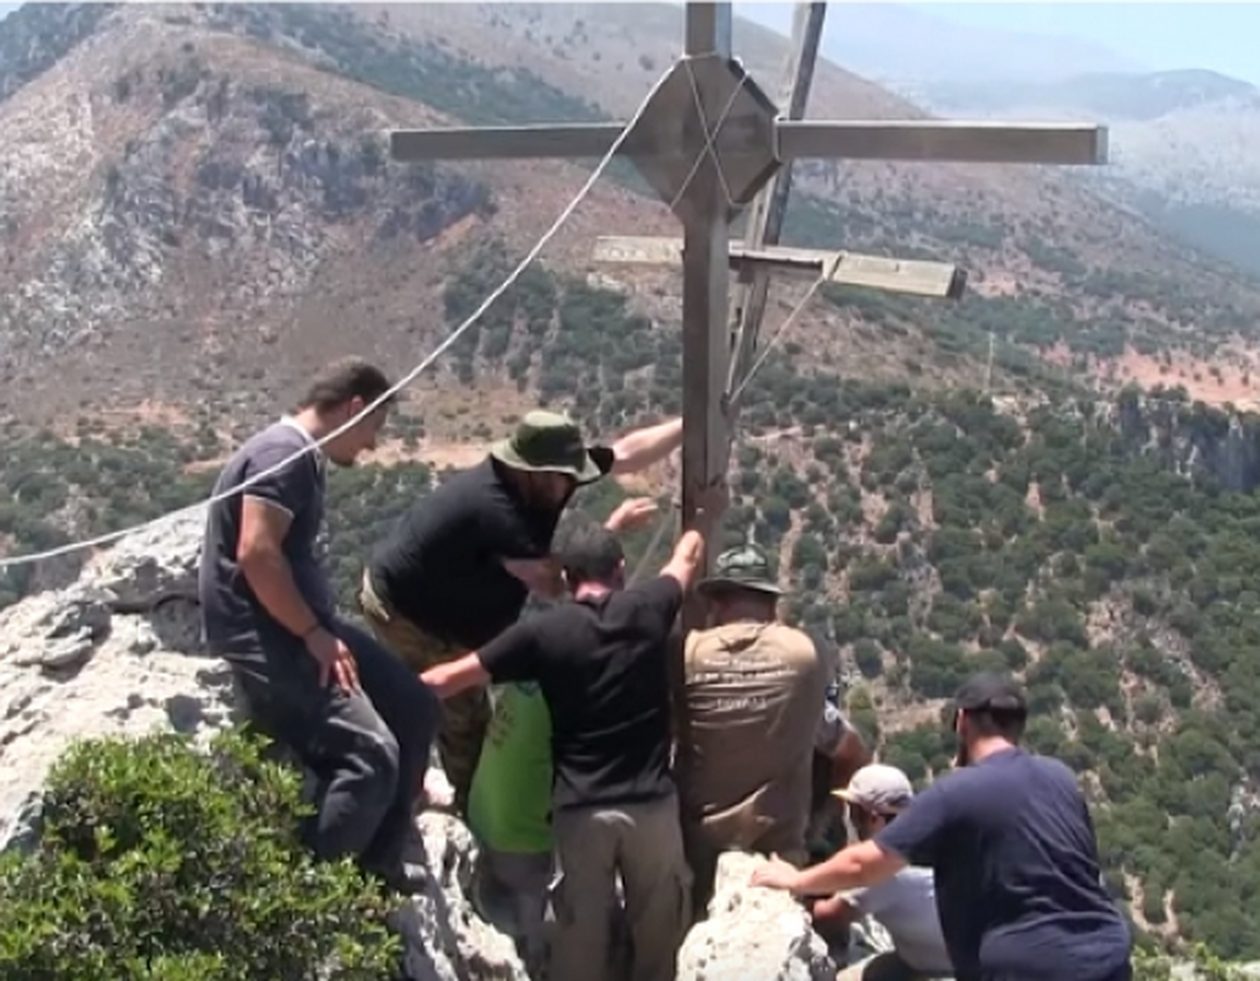 Κρητικοί ανέβασαν με τα χέρια σταυρό 100 κιλών στην κορυφή του βουνού [φωτο+βίντεο]